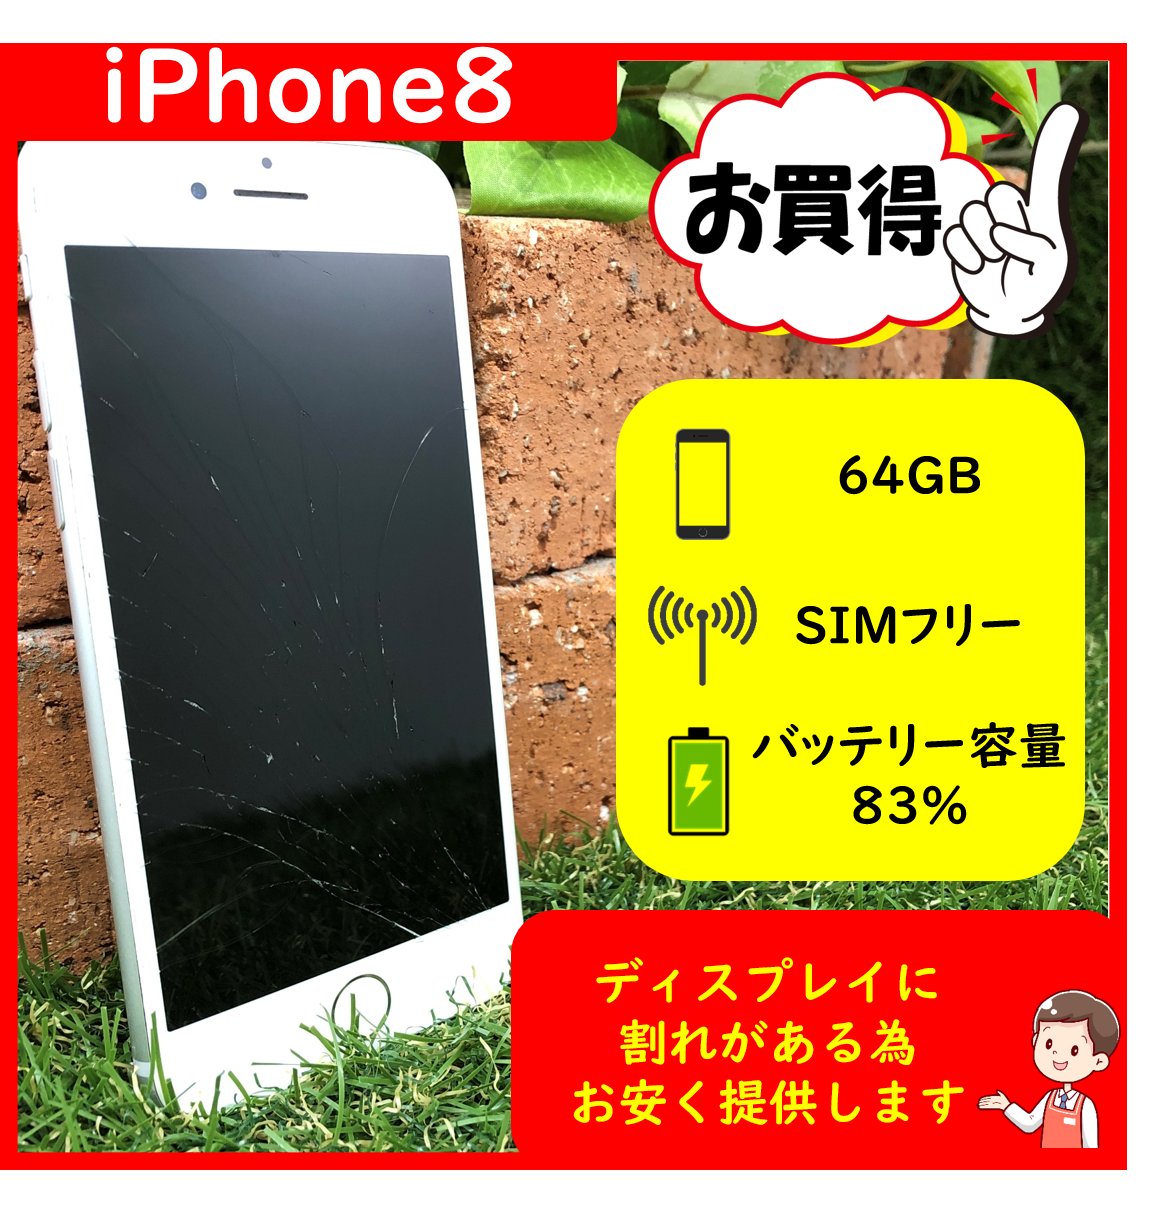 スマートフォン/携帯電話iPhone8 64GB SIMフリー ジャンク品